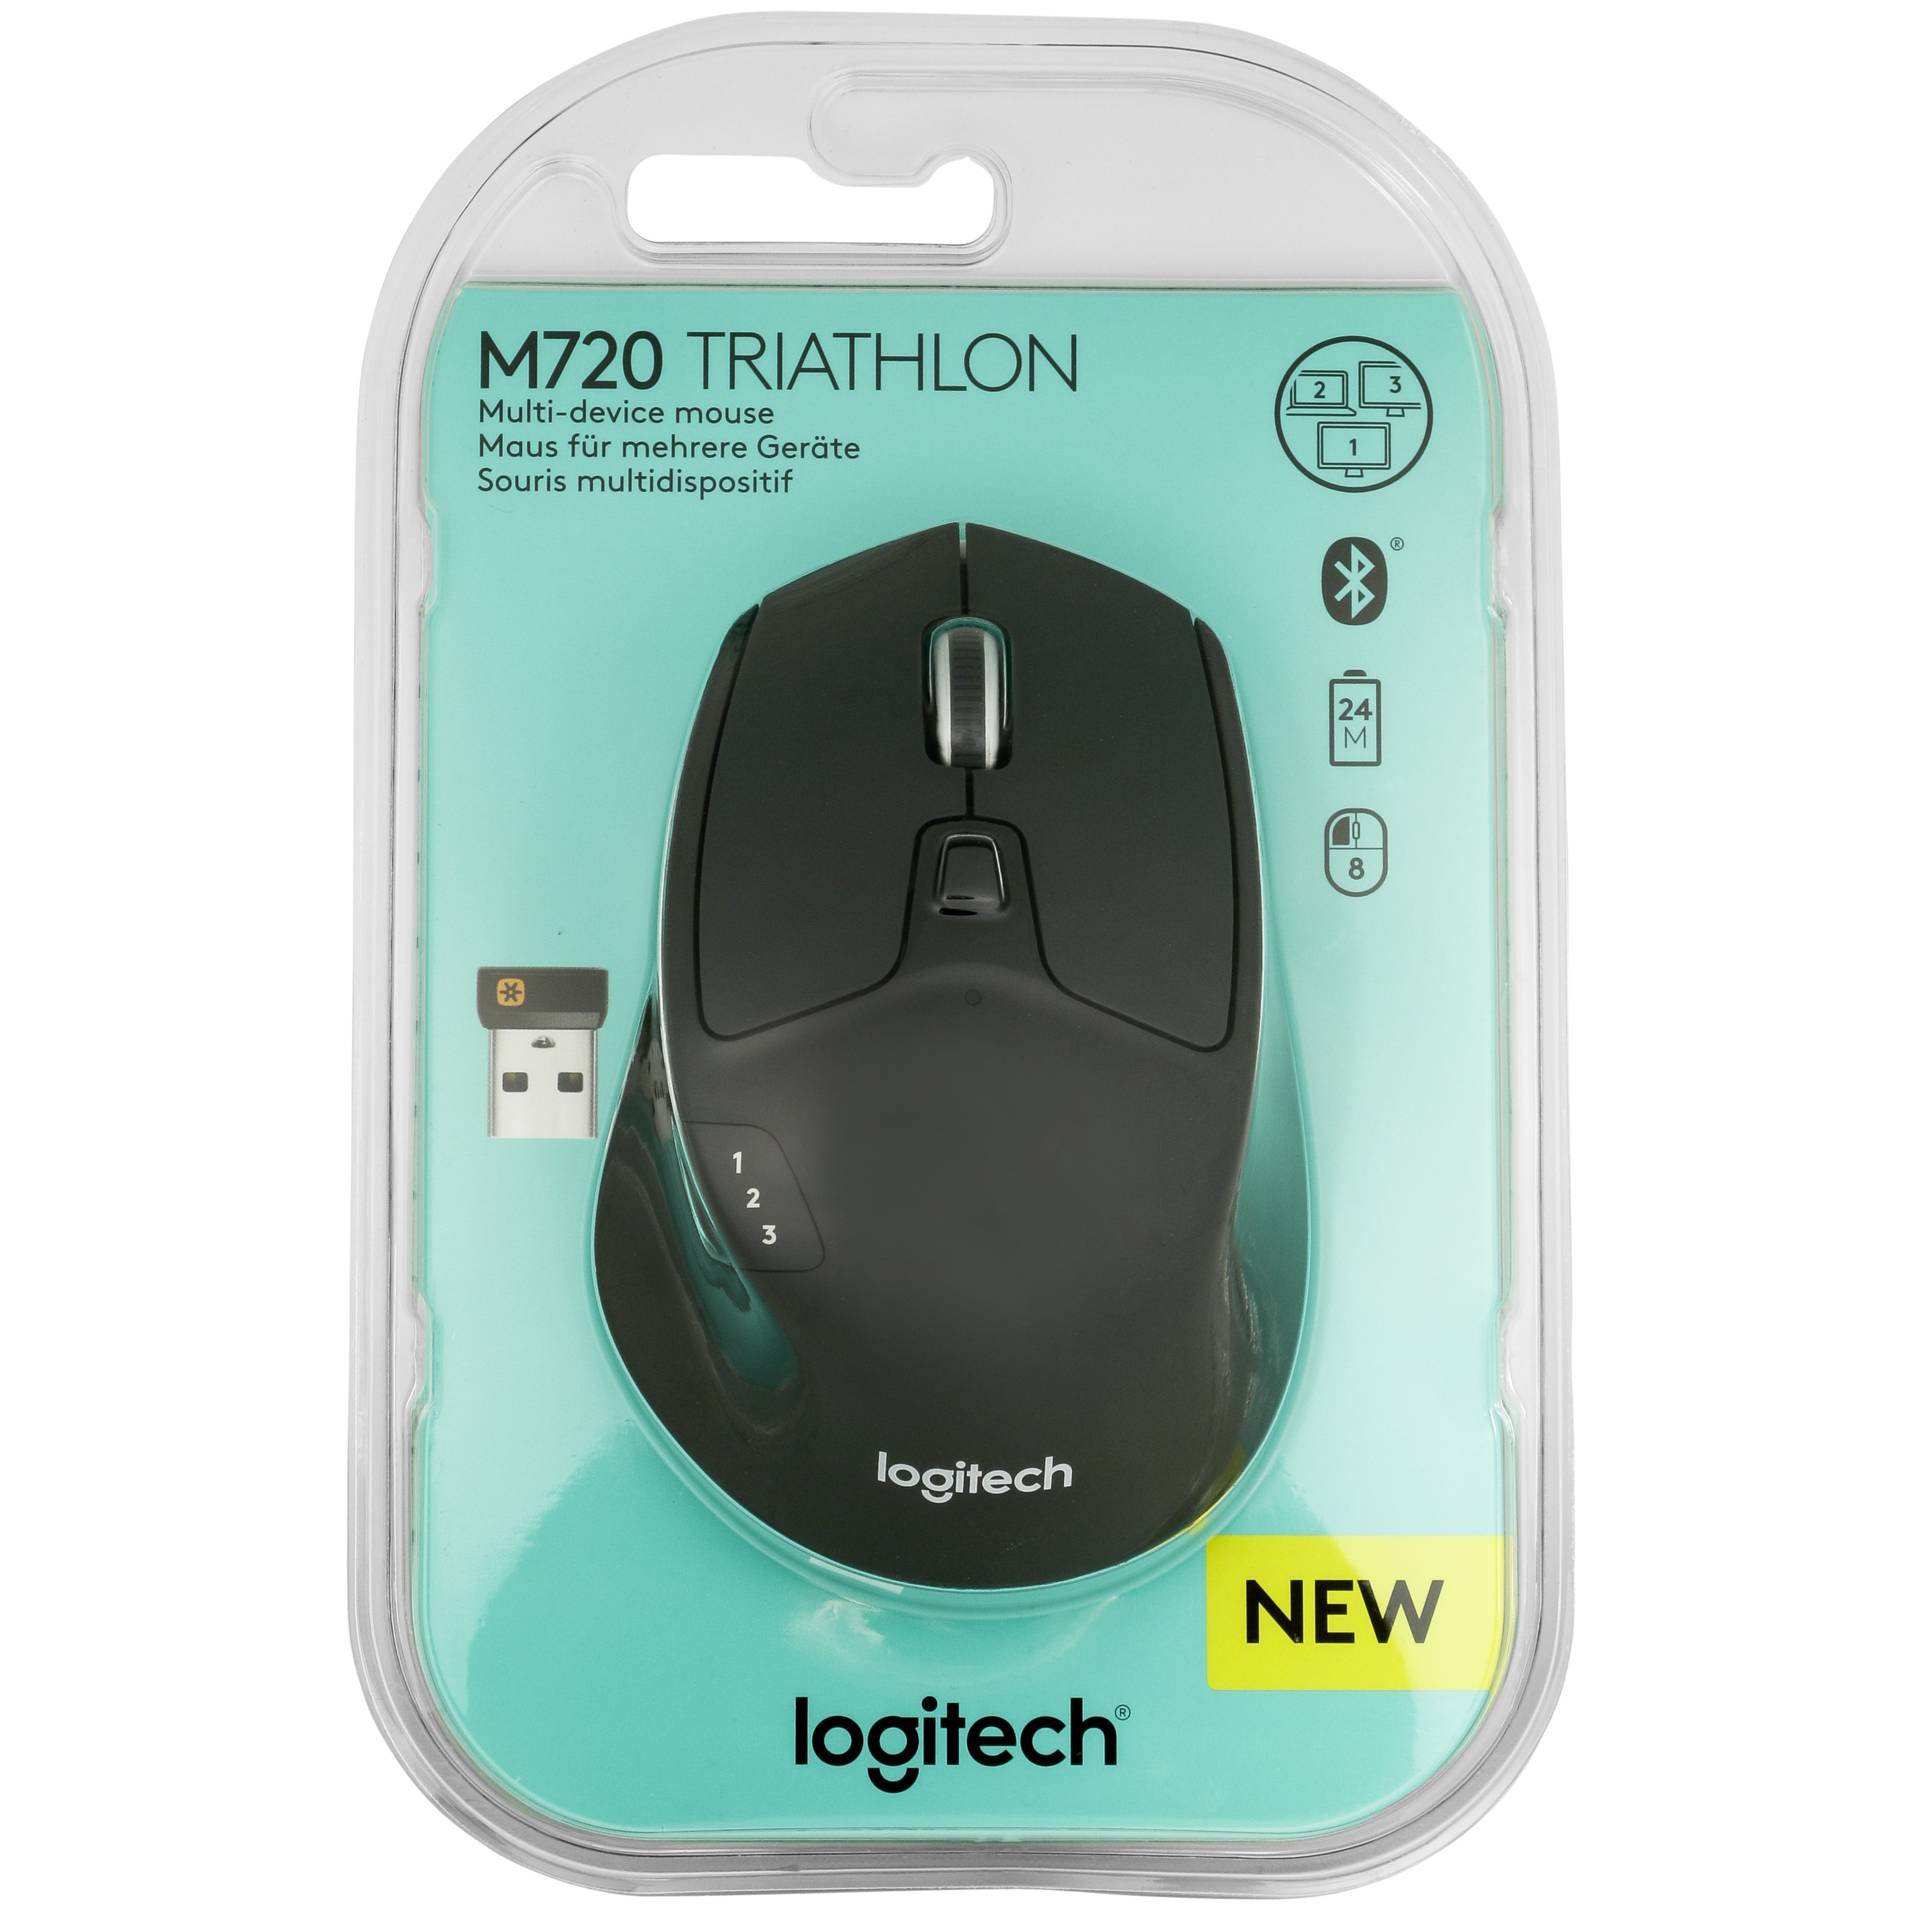 Logitech M720 Triathlon mouse